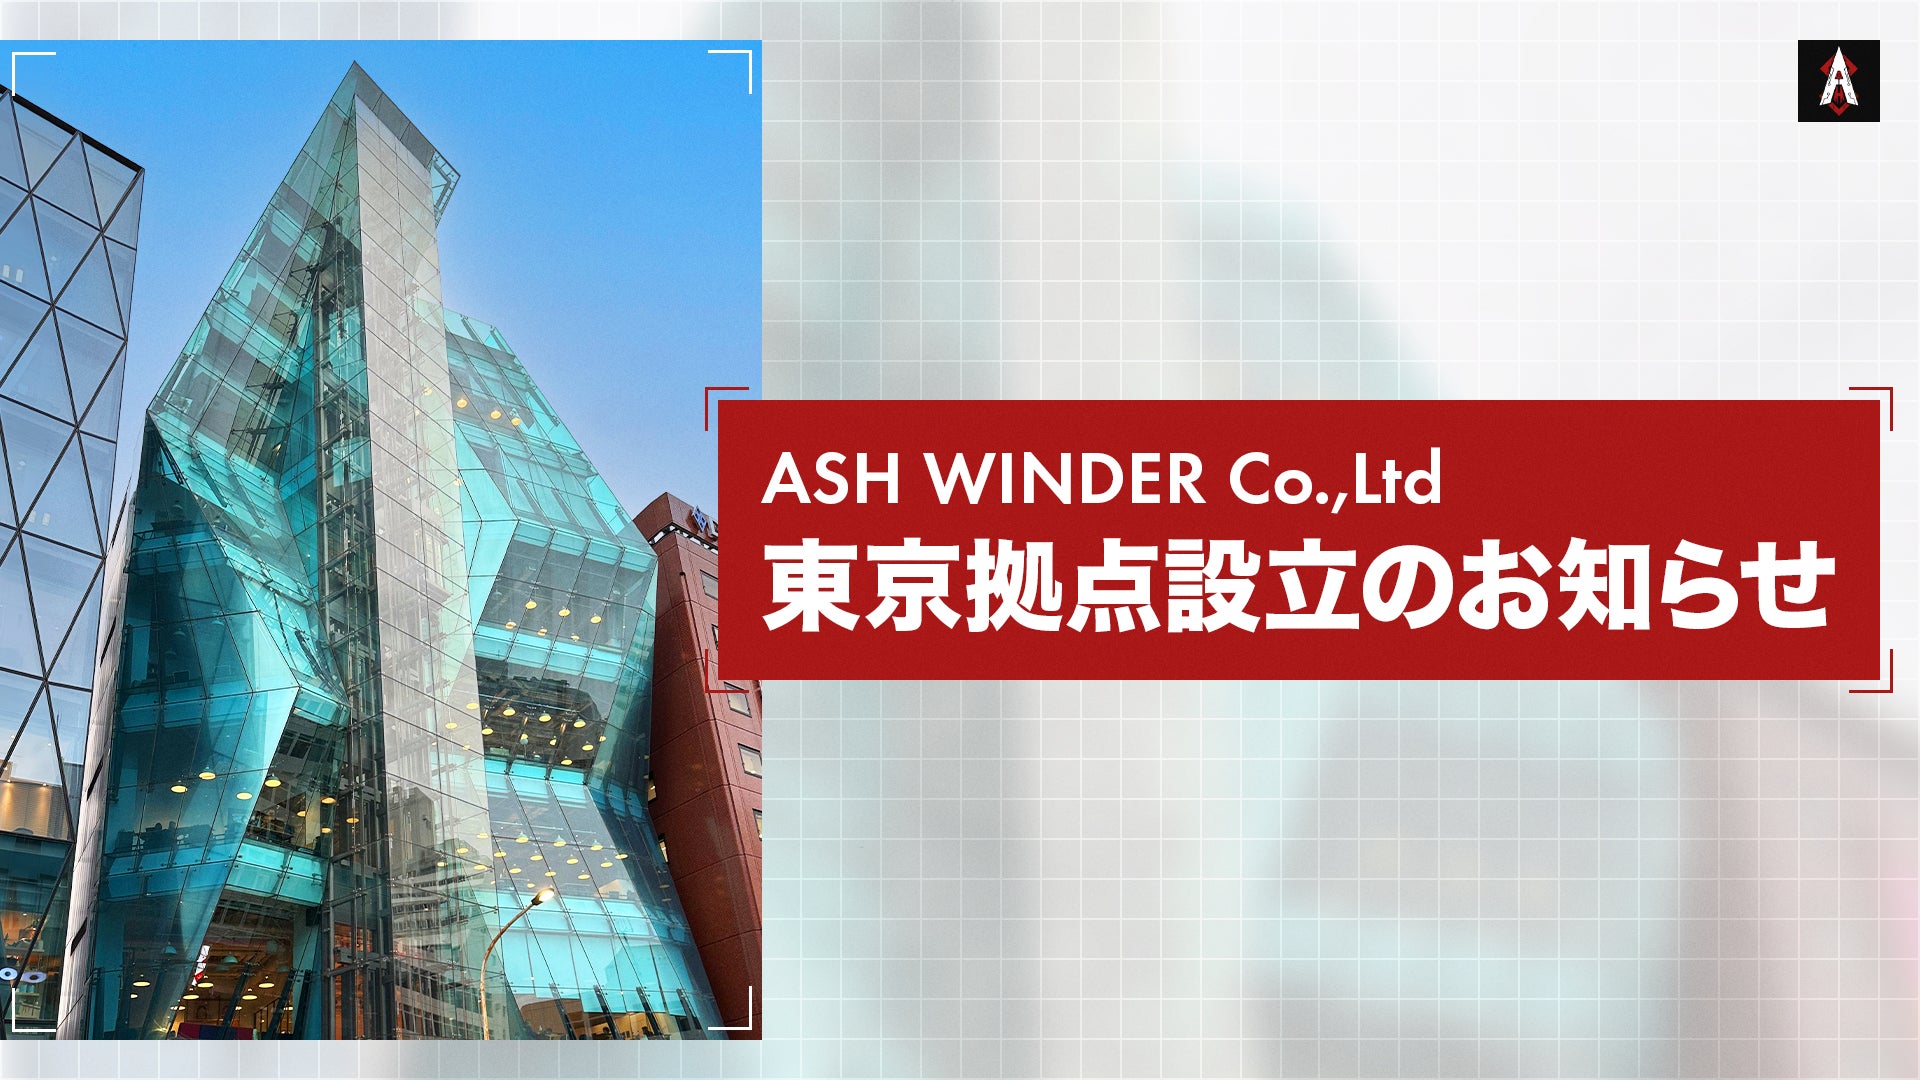 株式会社ASH WINDER、新たに東京拠点設立のお知らせ